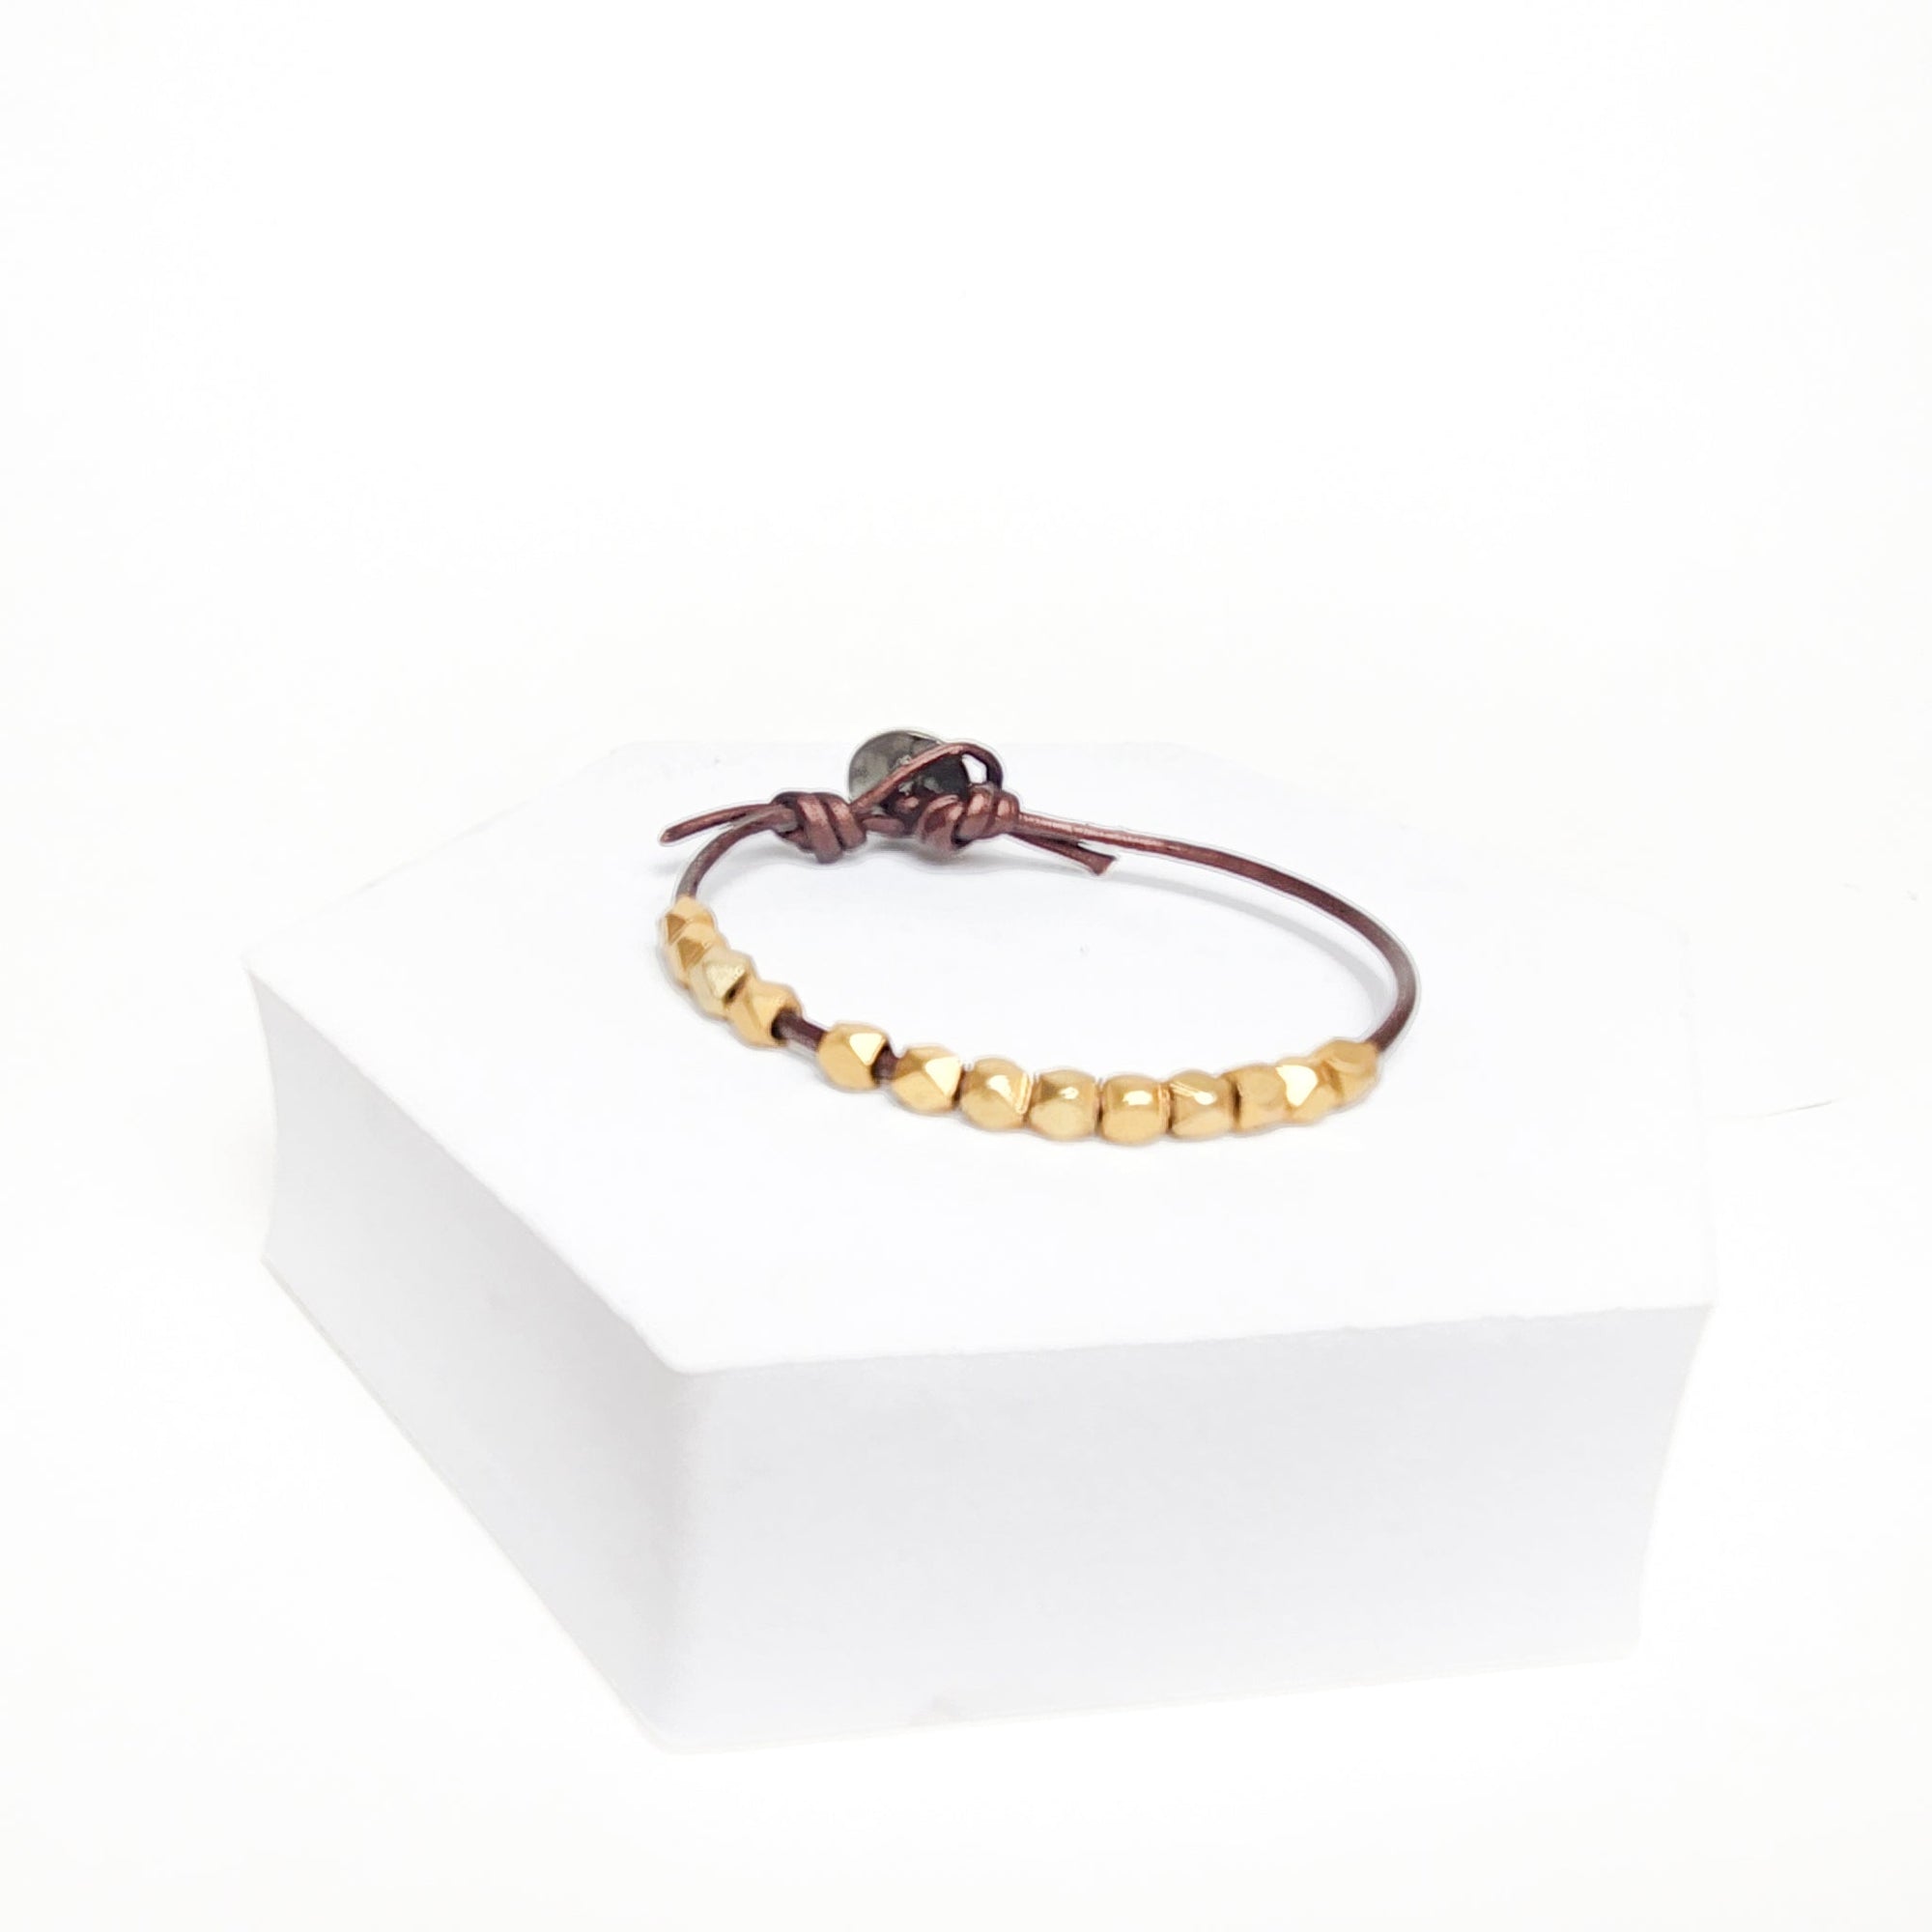 Faceted Metal Leather Bracelet - Gold - Alternatives Global Marketplace